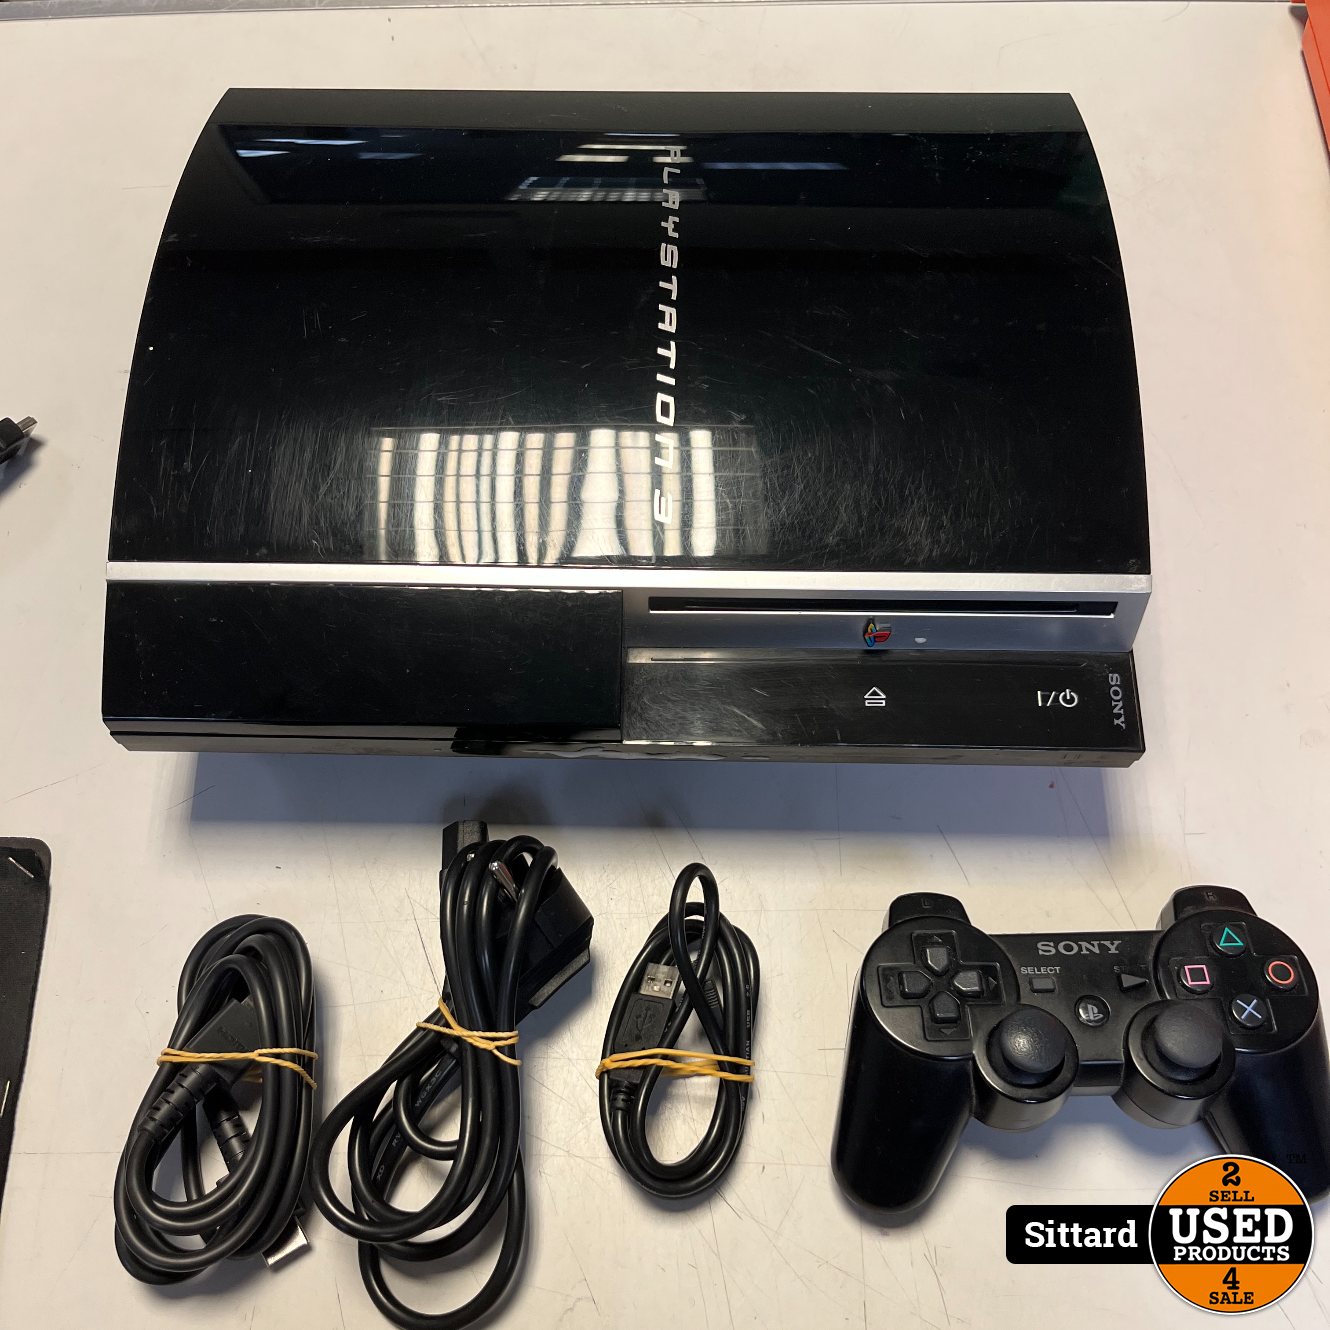 samenvoegen Computerspelletjes spelen verkorten Sony Playstation 3 console - Used Products Sittard